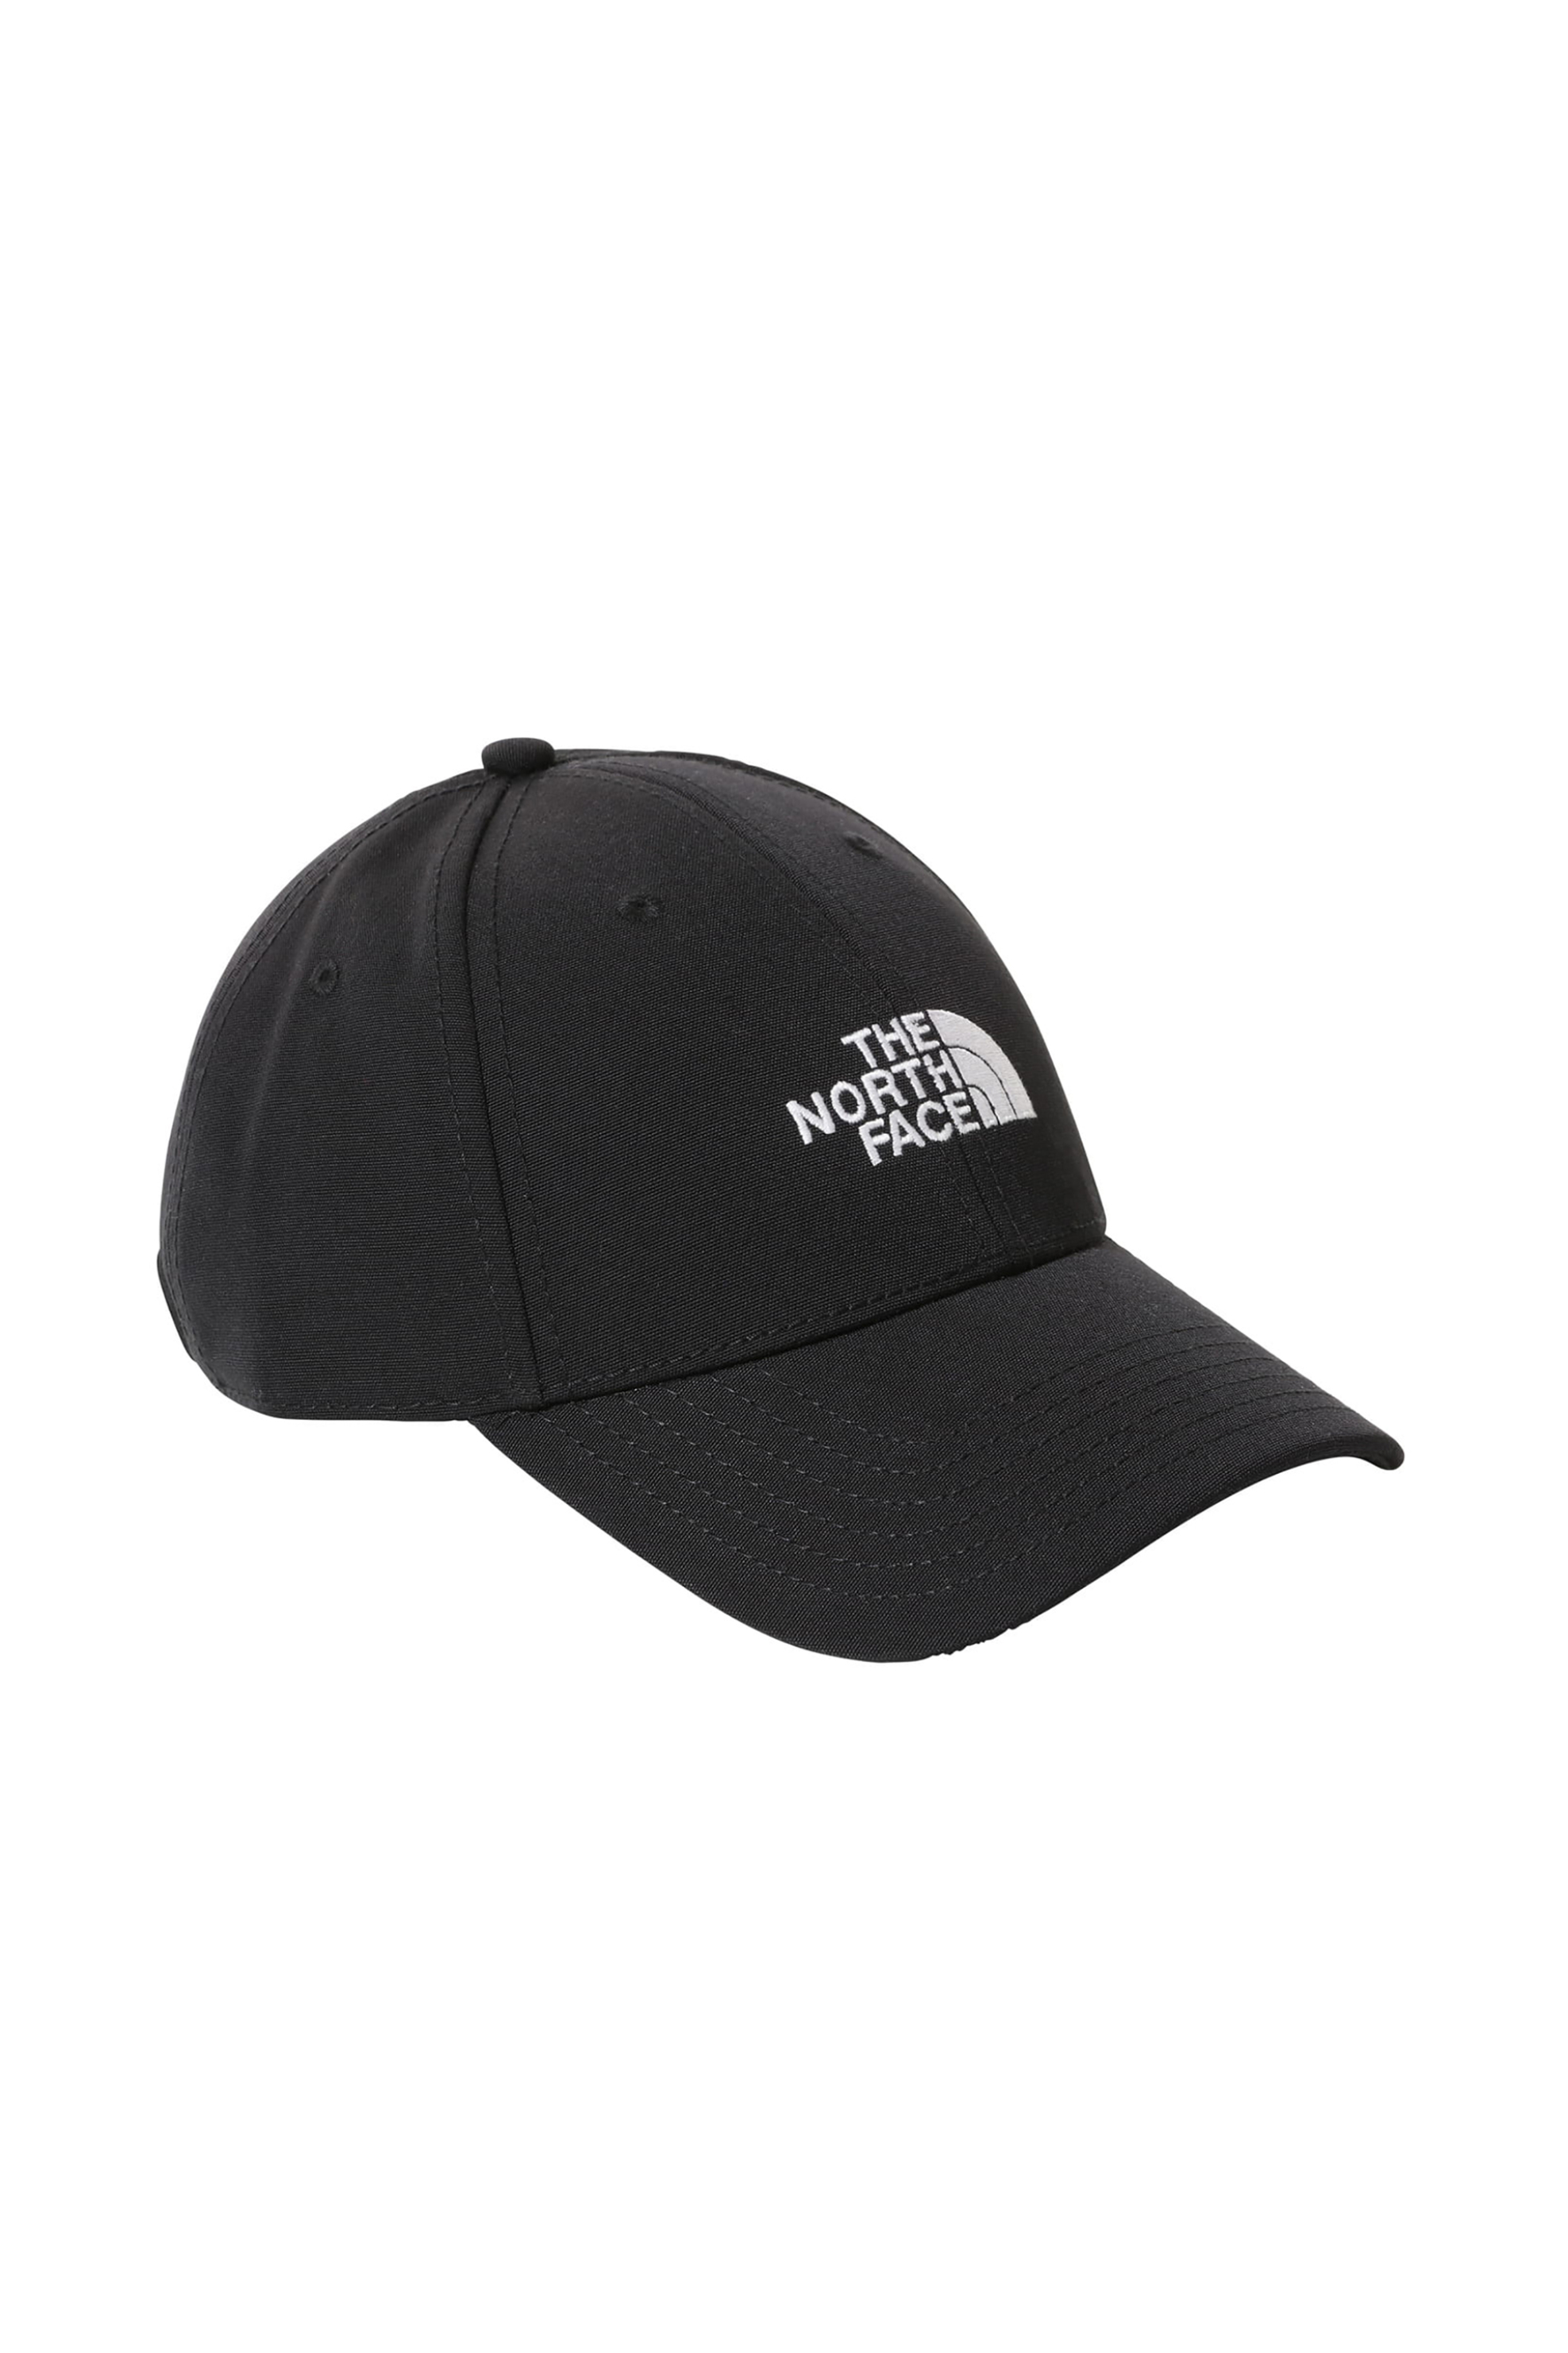 Ανδρική Μόδα > Ανδρικά Αξεσουάρ > Ανδρικά Καπέλα & Σκούφοι The North Face unisex καπέλο με κεντημένο λογότυπο "Recycled 66" - NF0A4VSVKY41 Μαύρο